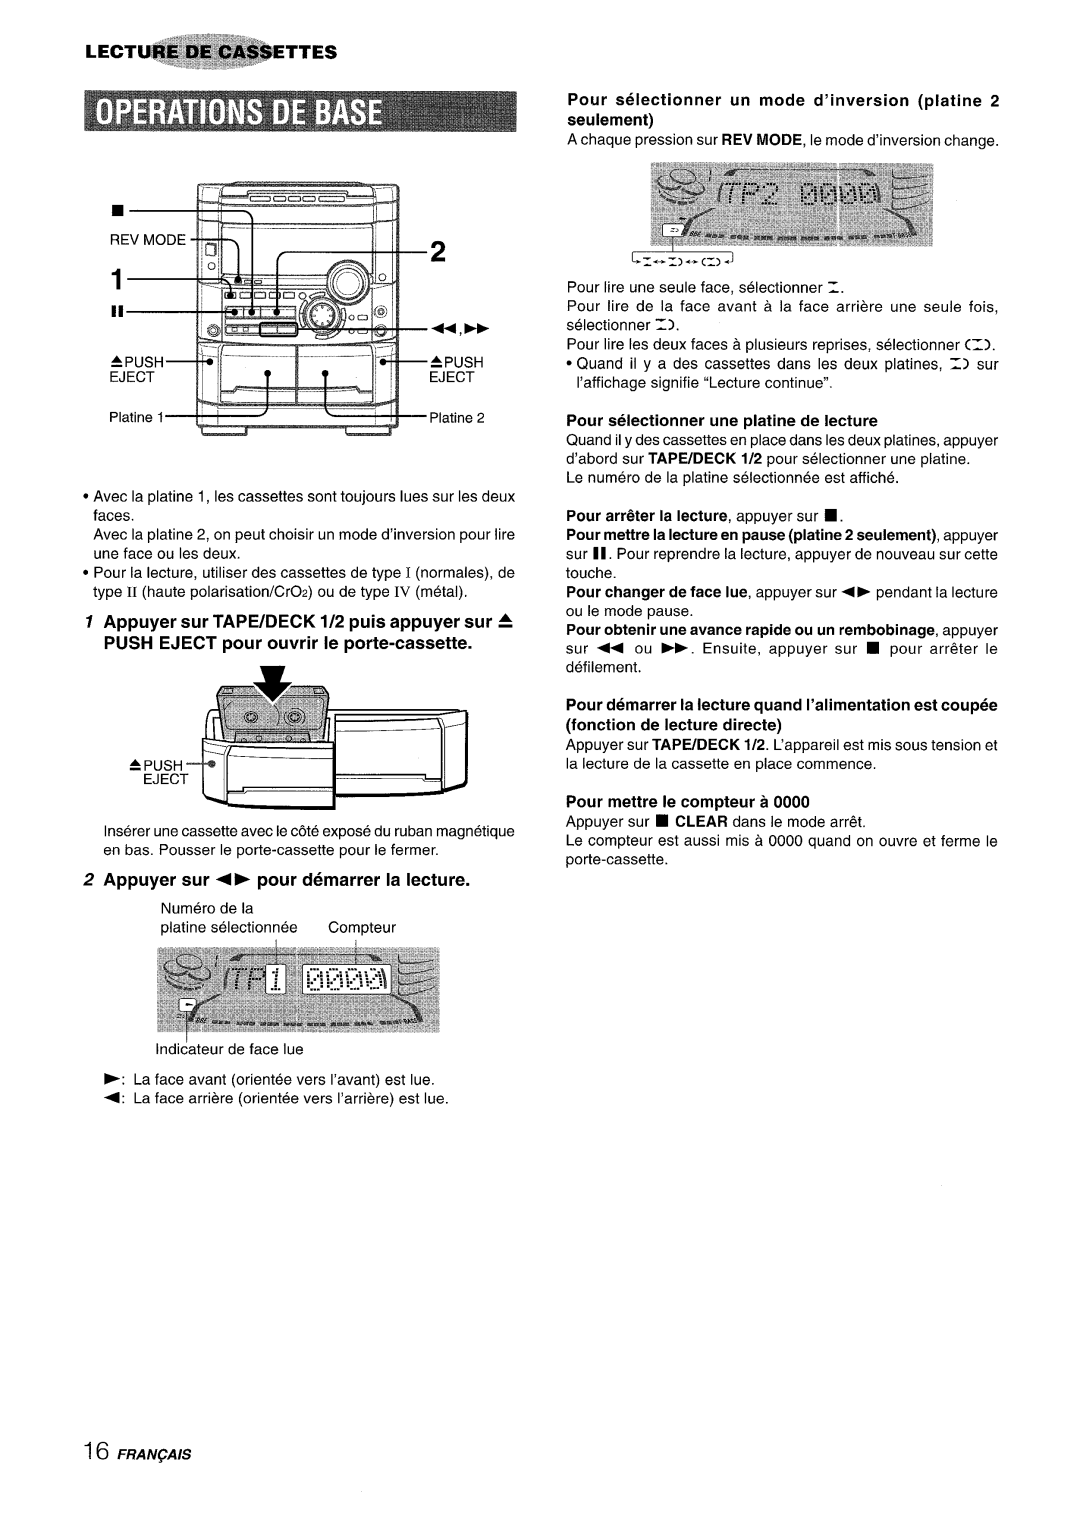 Sony NSX-A777 manual Appuyer sur + pour demarrer la lecture, Pour selectionner un mode d’inversion platine 2 seuiement 